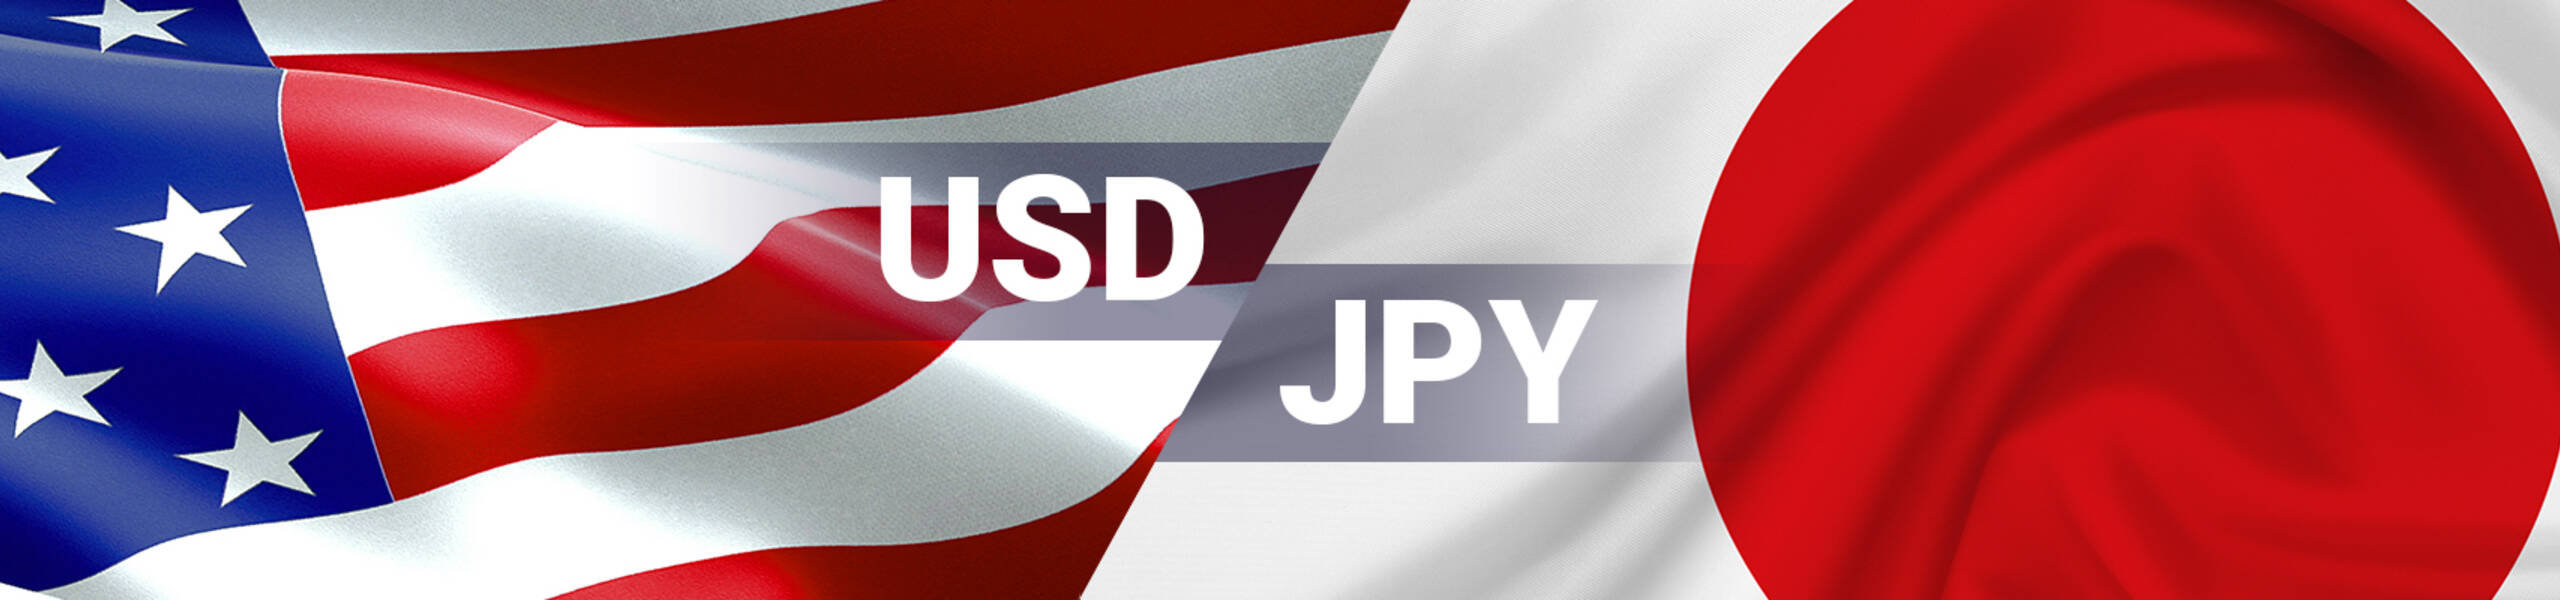 USD/JPY comenzando la corrección post-elecciones